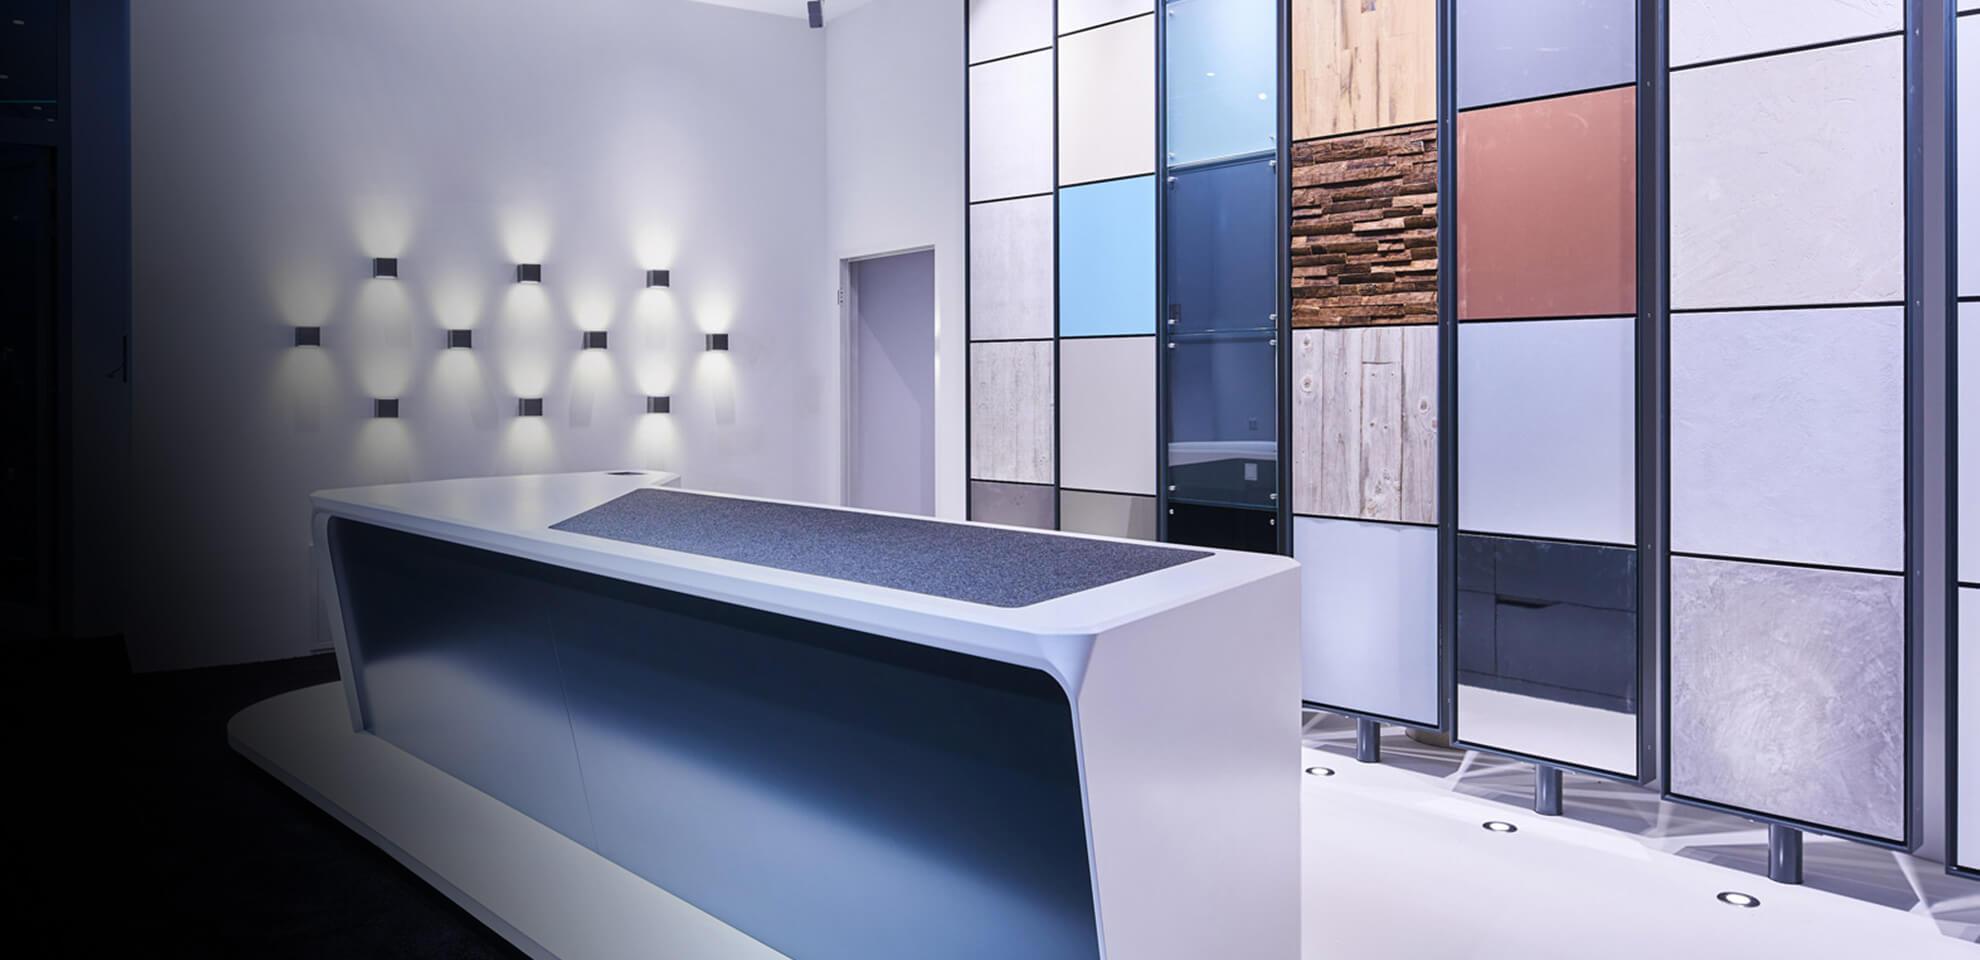 Stilsicher und passend zu Ihrem Corporate Design entwickelt Innenausbau-Firma Display International individuelle Showrooms.